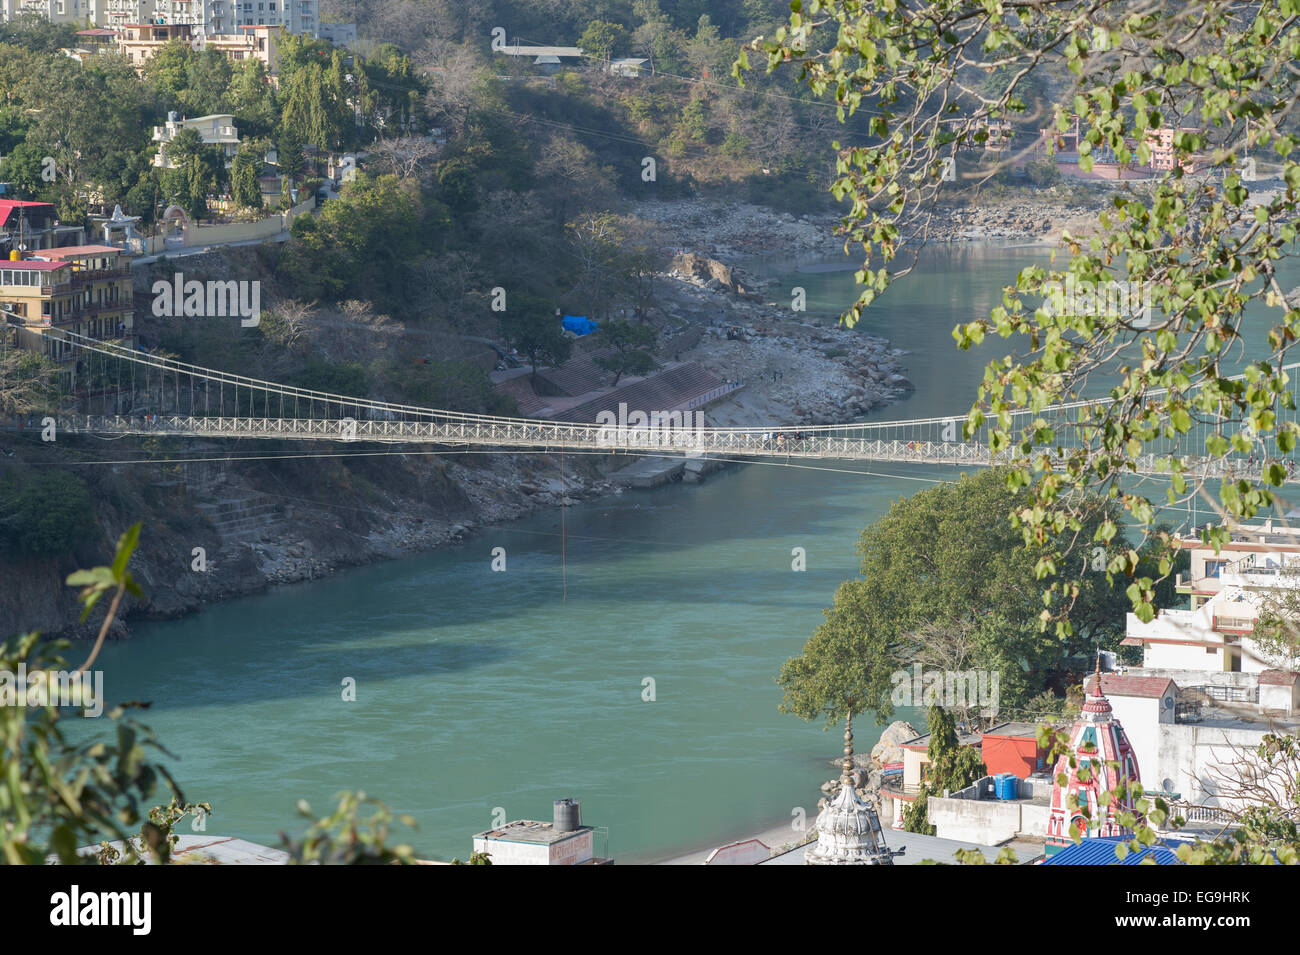 Regardant le Lakshman Jhula bridge qui traverse le Gange dans la ville de Rishikesh, Uttarakhand, Inde Banque D'Images